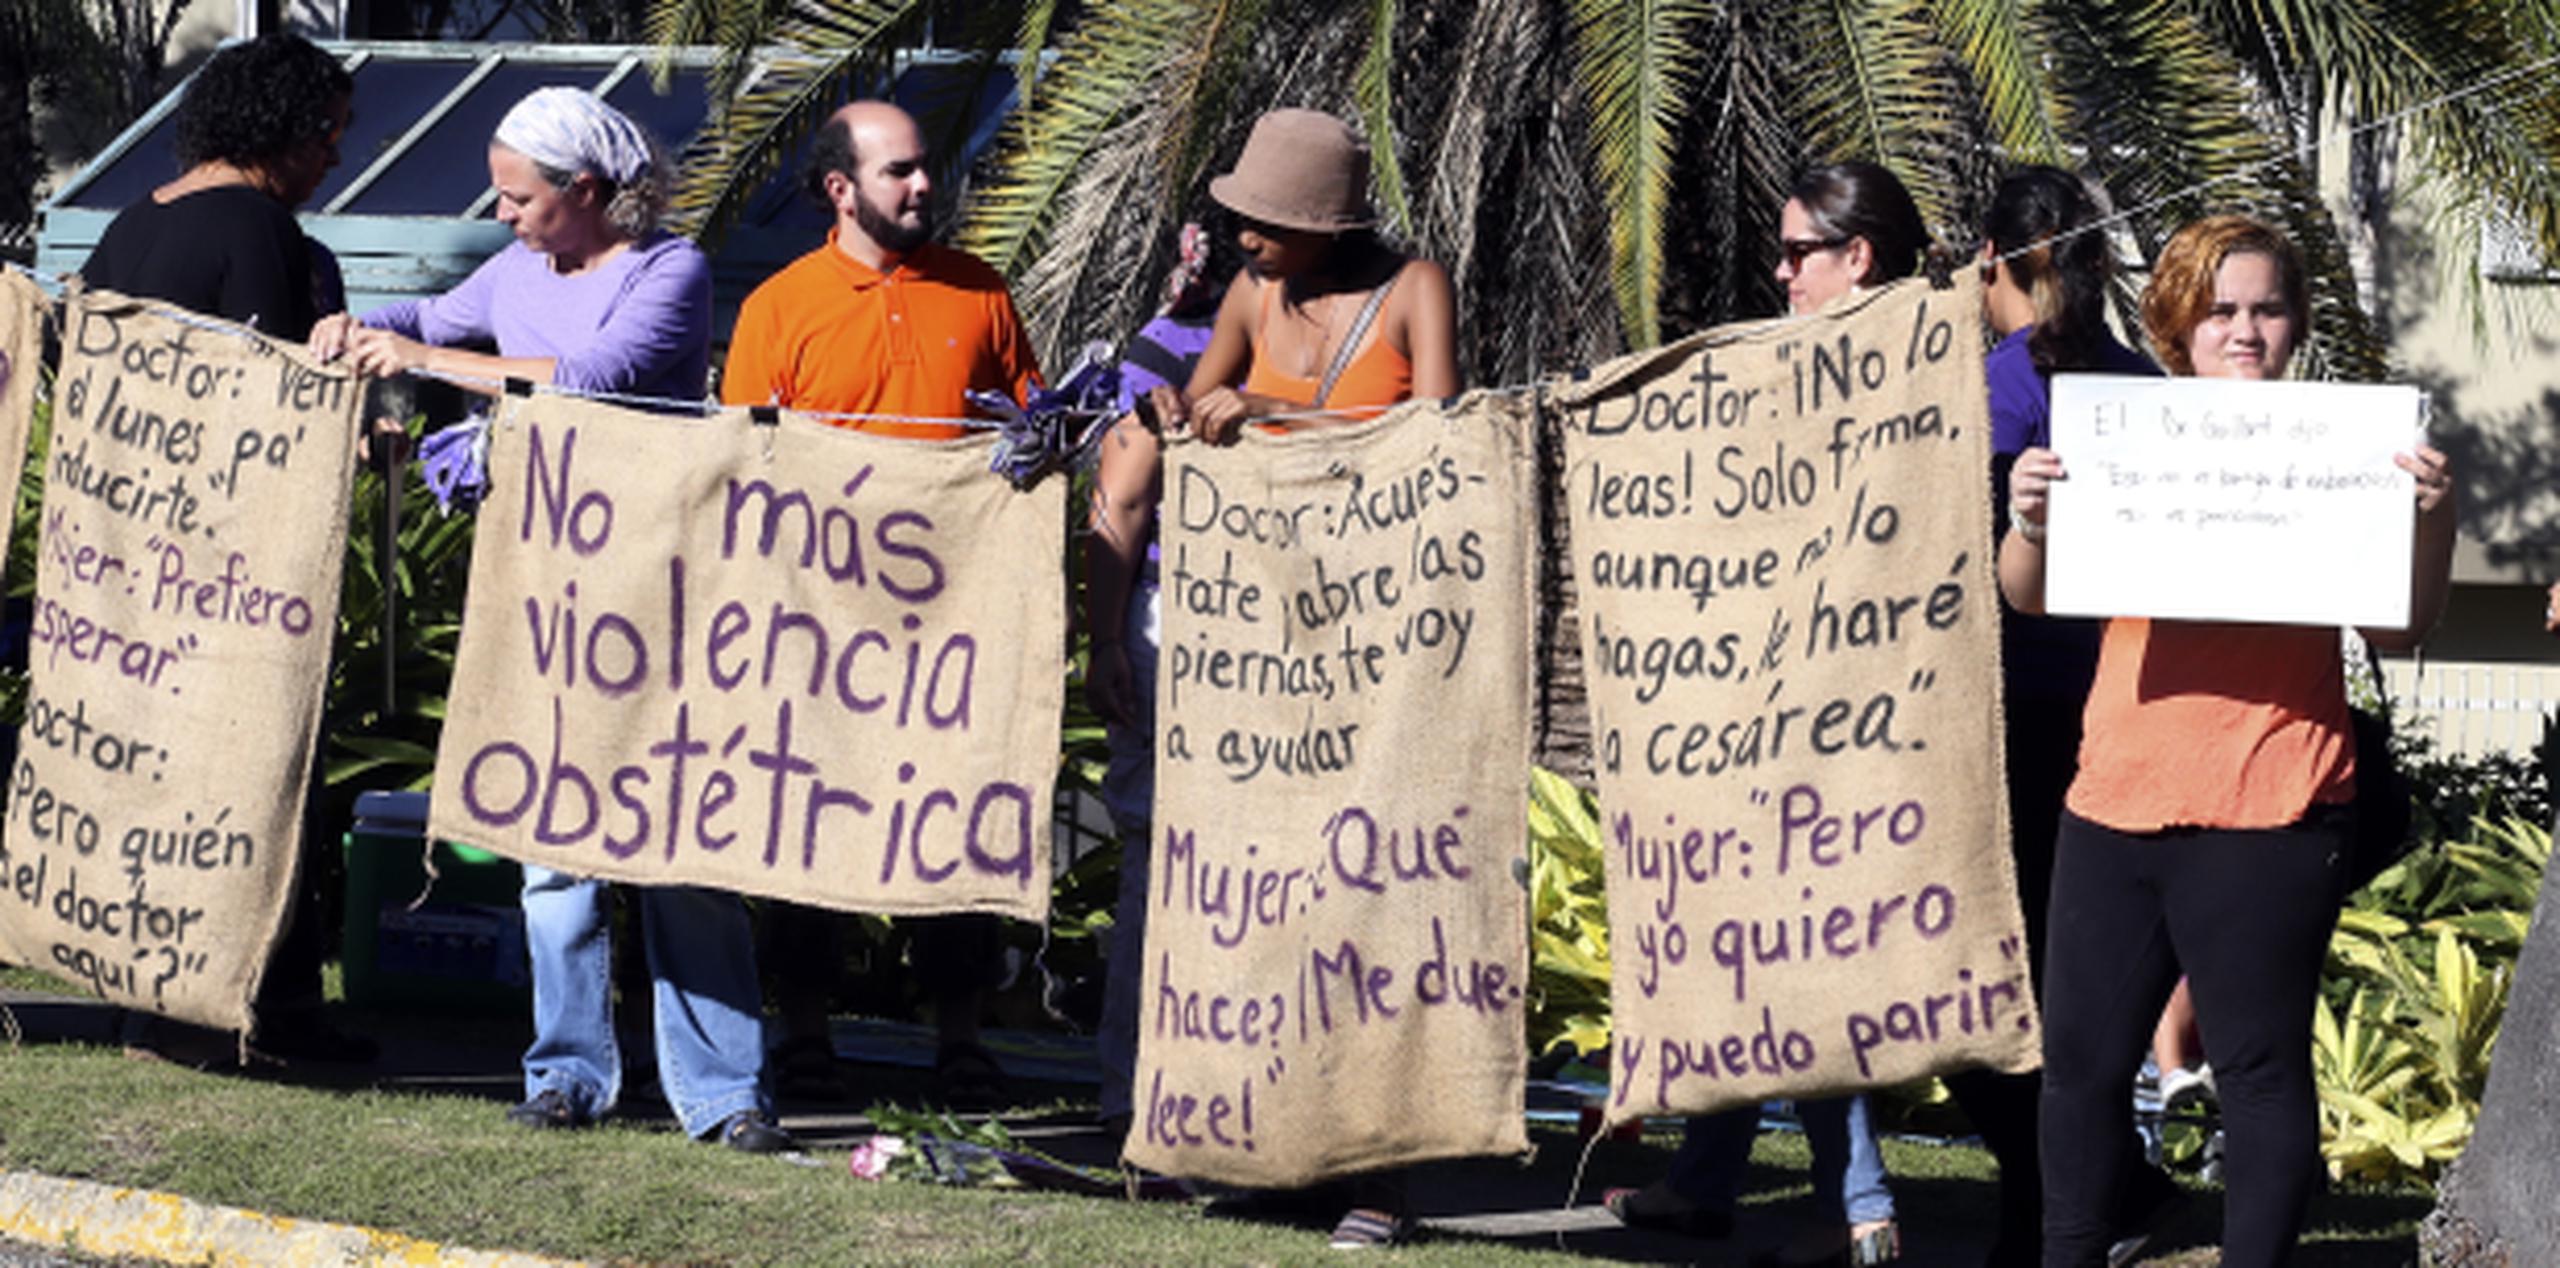 La jornada de protestas, como ésta ocurrida el pasado 25 de noviembre en Guaynabo, duró 16 días. (Archivo)